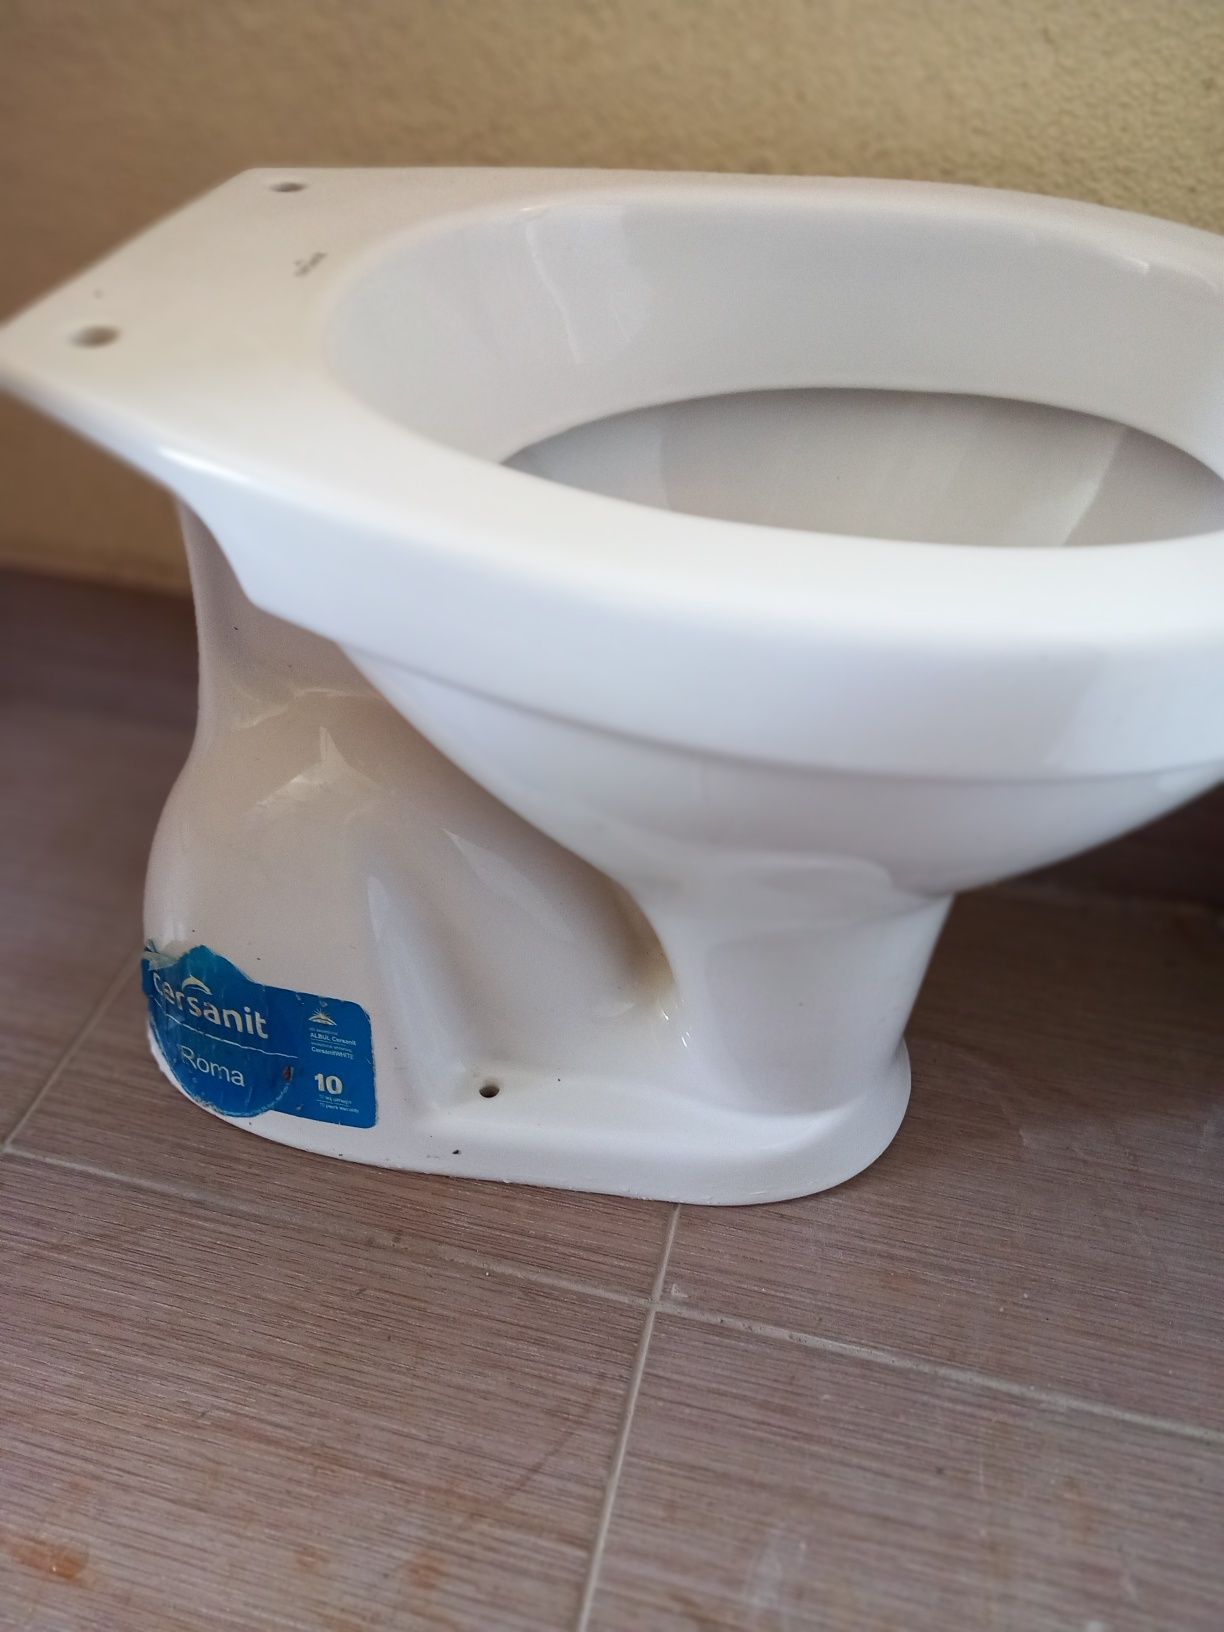 Vand vas wc complect